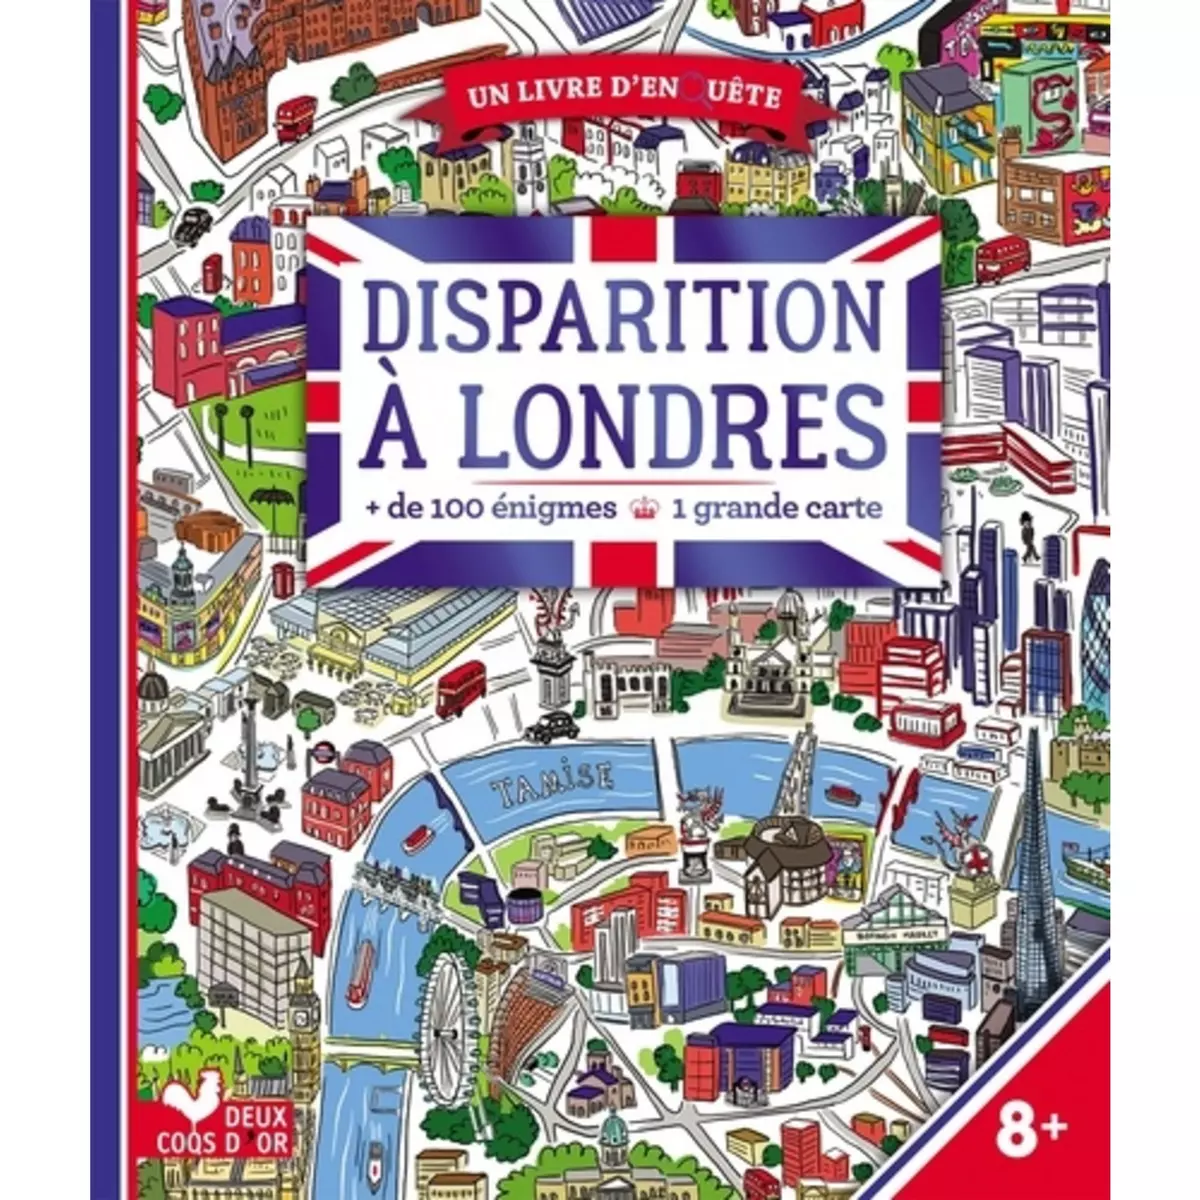  DISPARITION A LONDRES. + DE 100 ENIGMES. AVEC UNE GRANDE CARTE, Les Fées Hilares